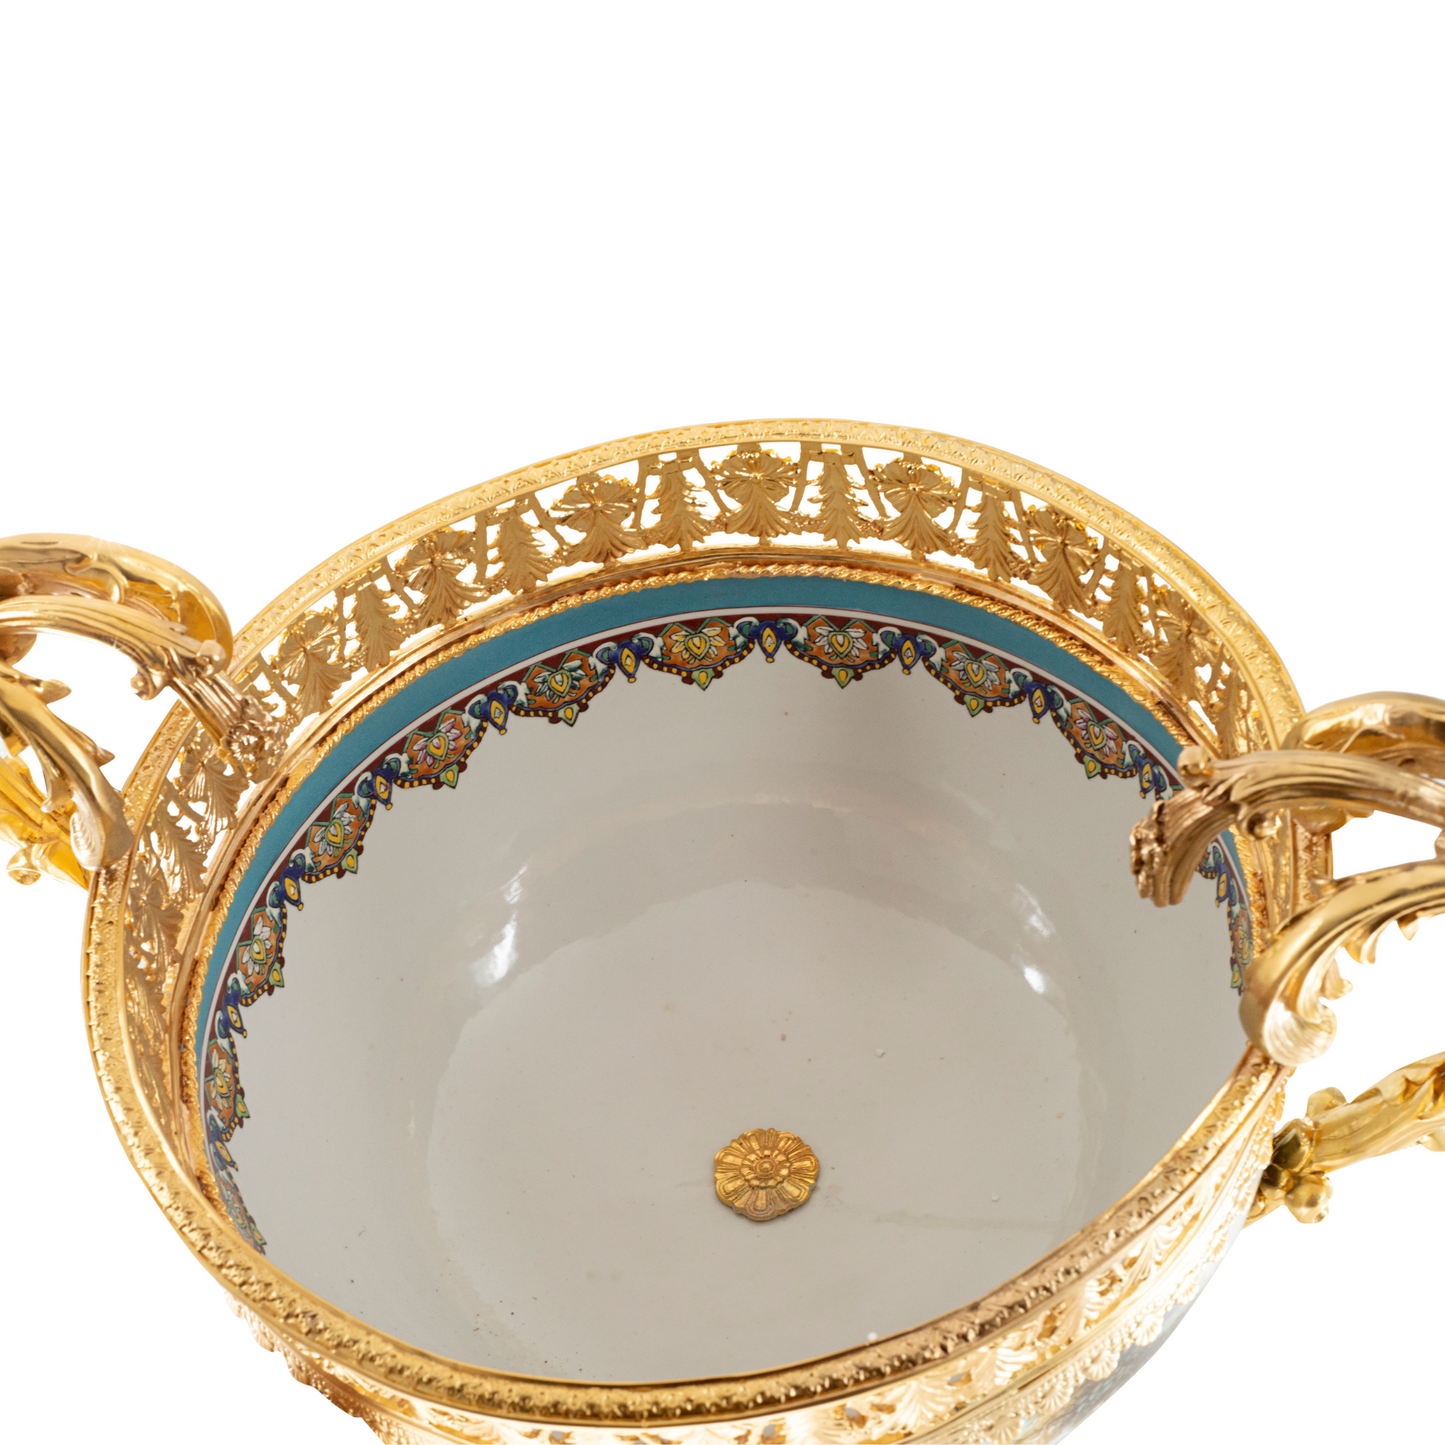 Porcelain Decorative Center Piece Bowl